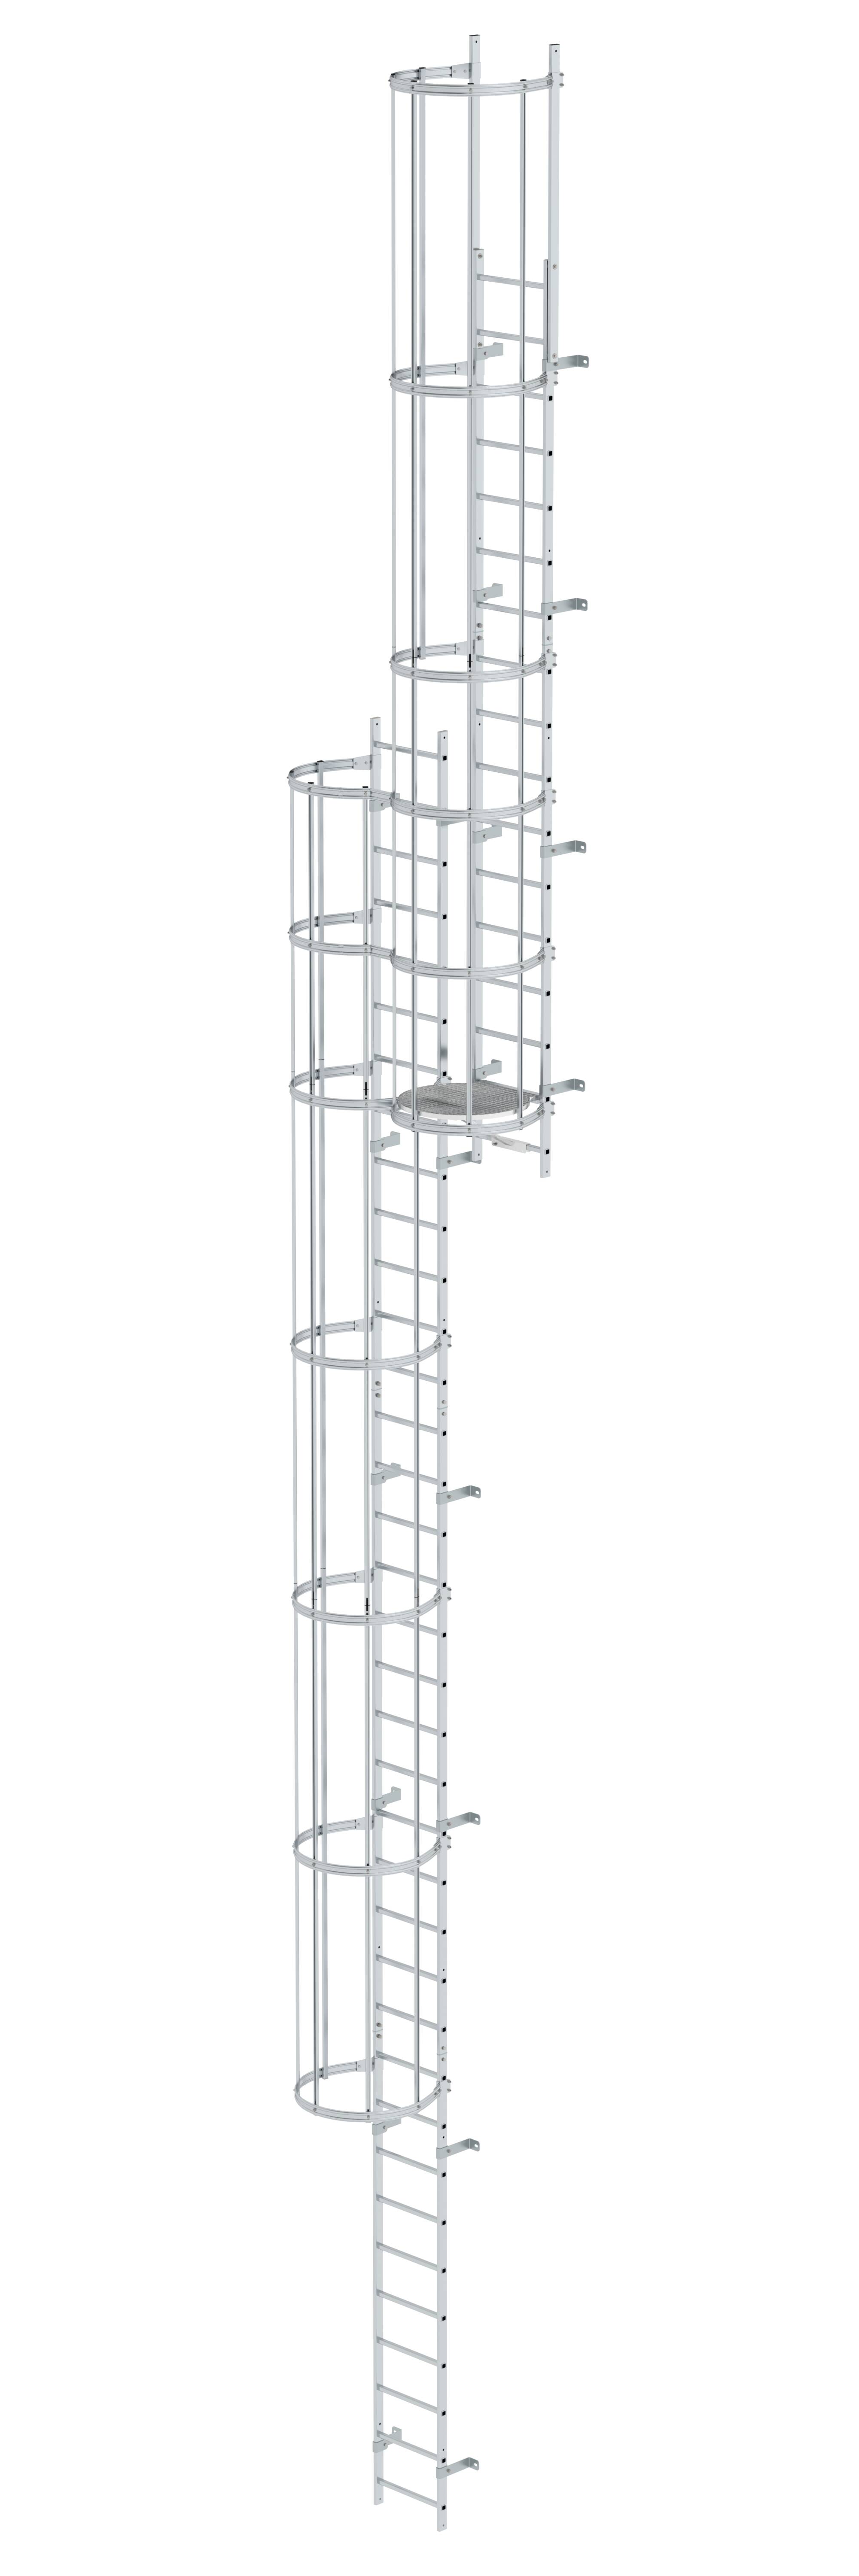 Mehrzügige Steigleiter mit Rückenschutz (Bau) Aluminium blank 13,80m